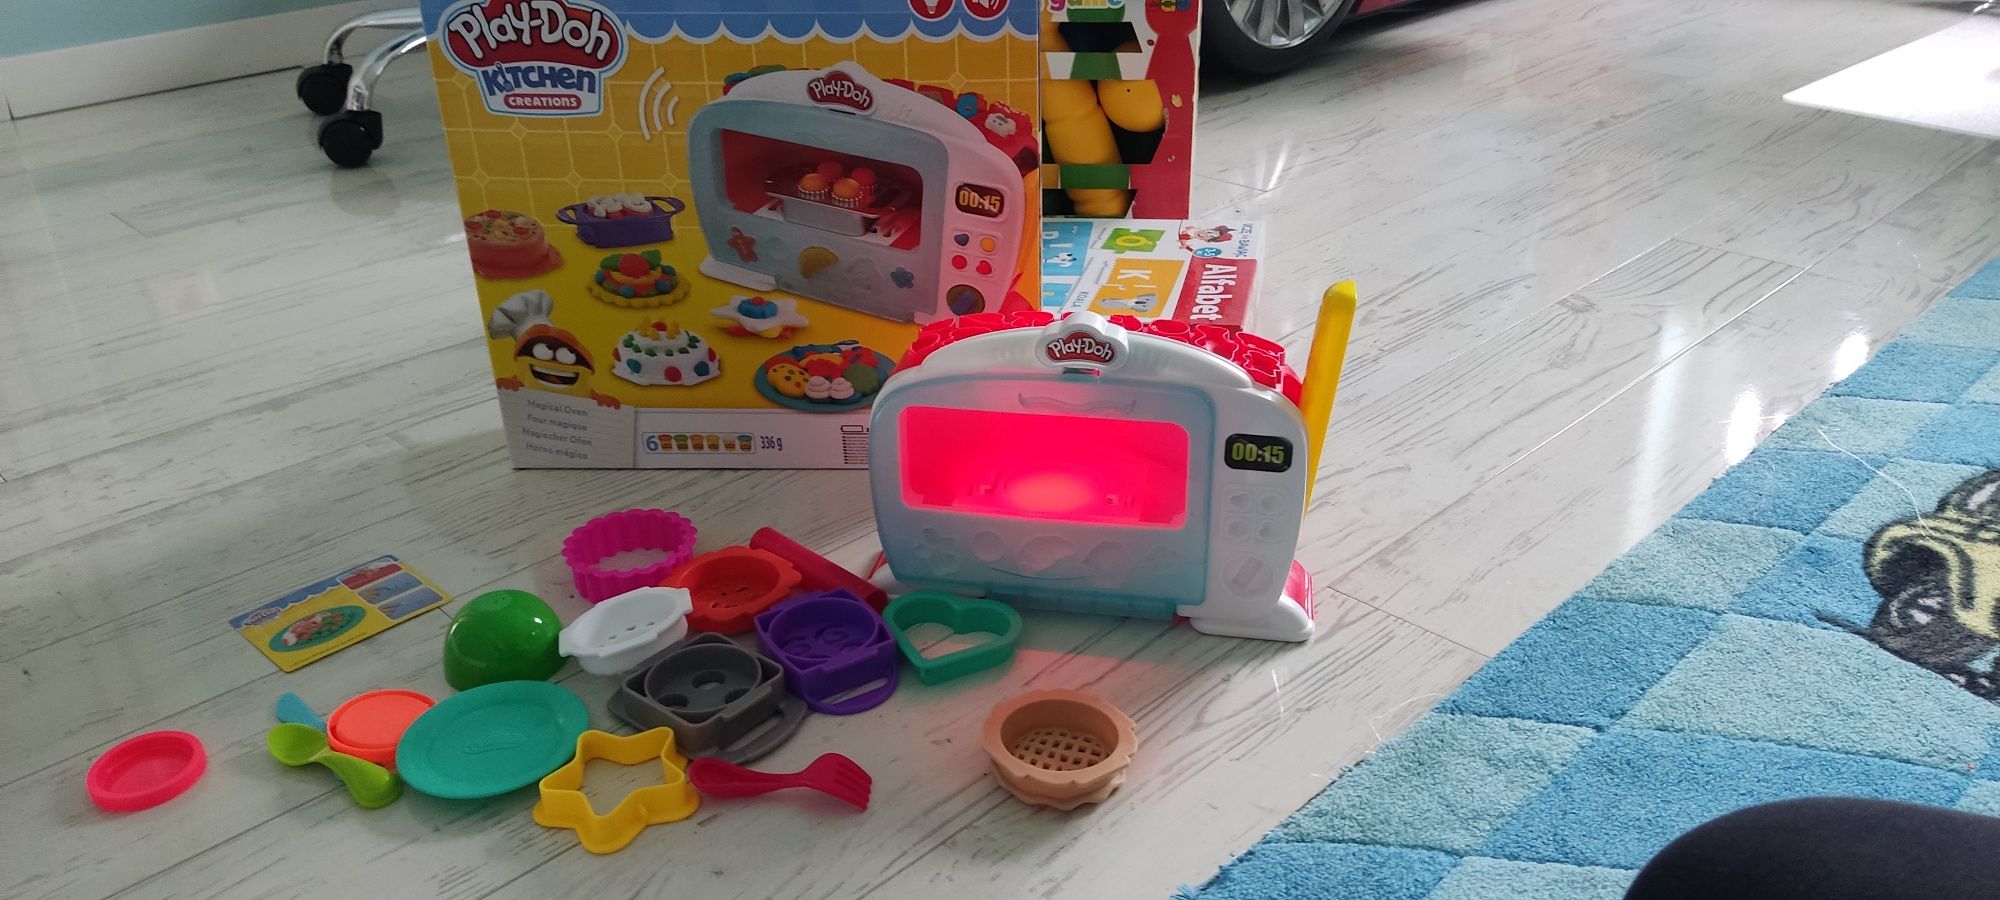 Play-Doh Kitchen Kuchania dziecięca w zestawie baterie